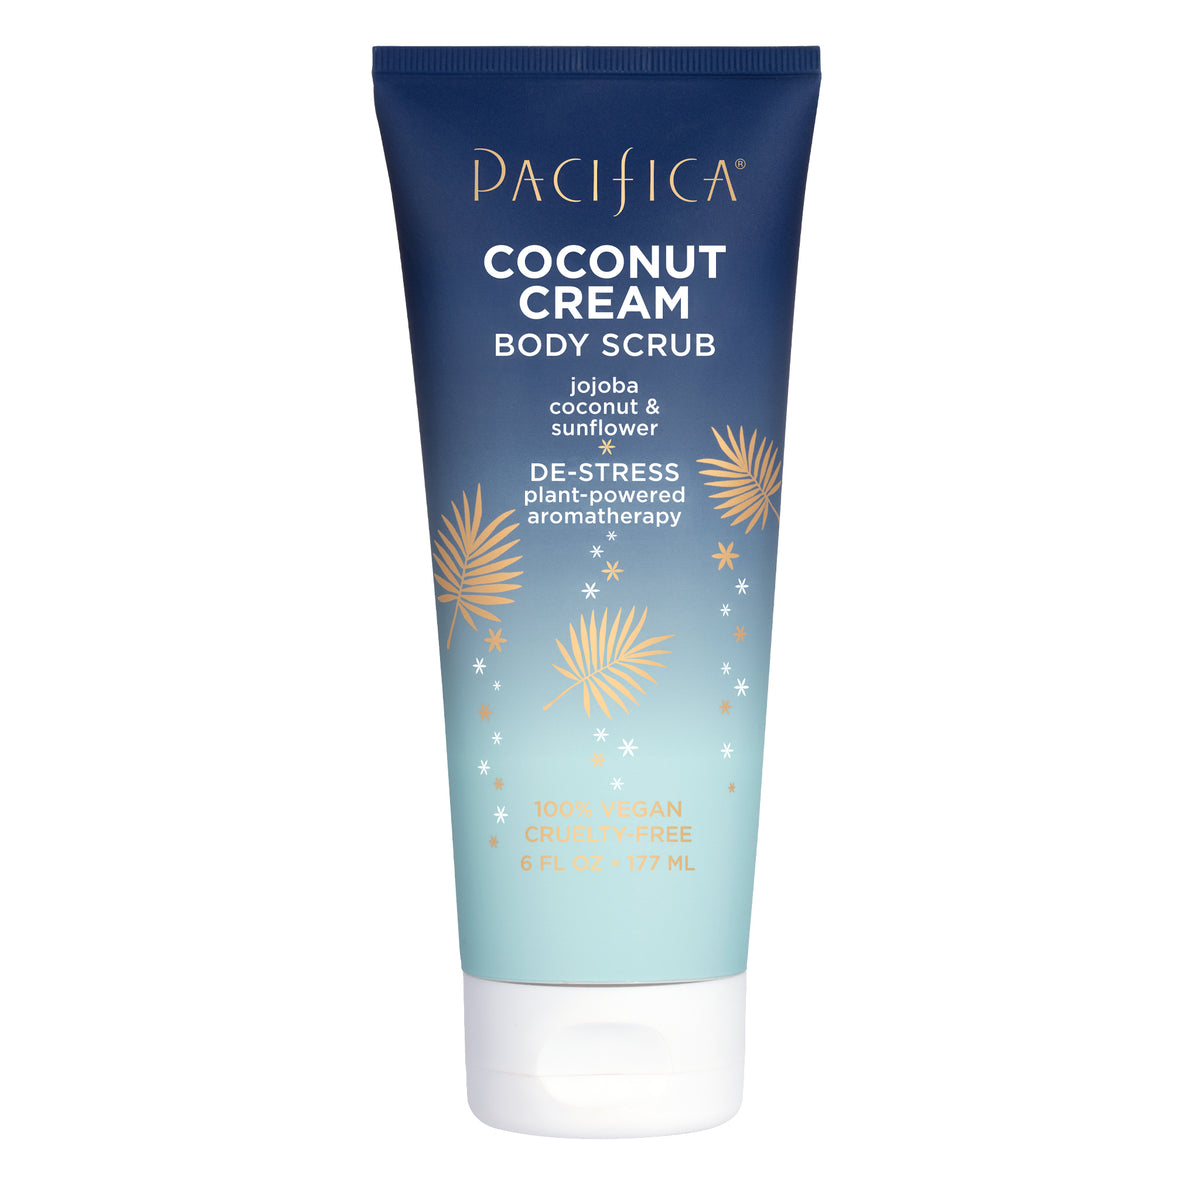 Coconut Cream Body Scrub - Bath & Body - Pacifica Beauty